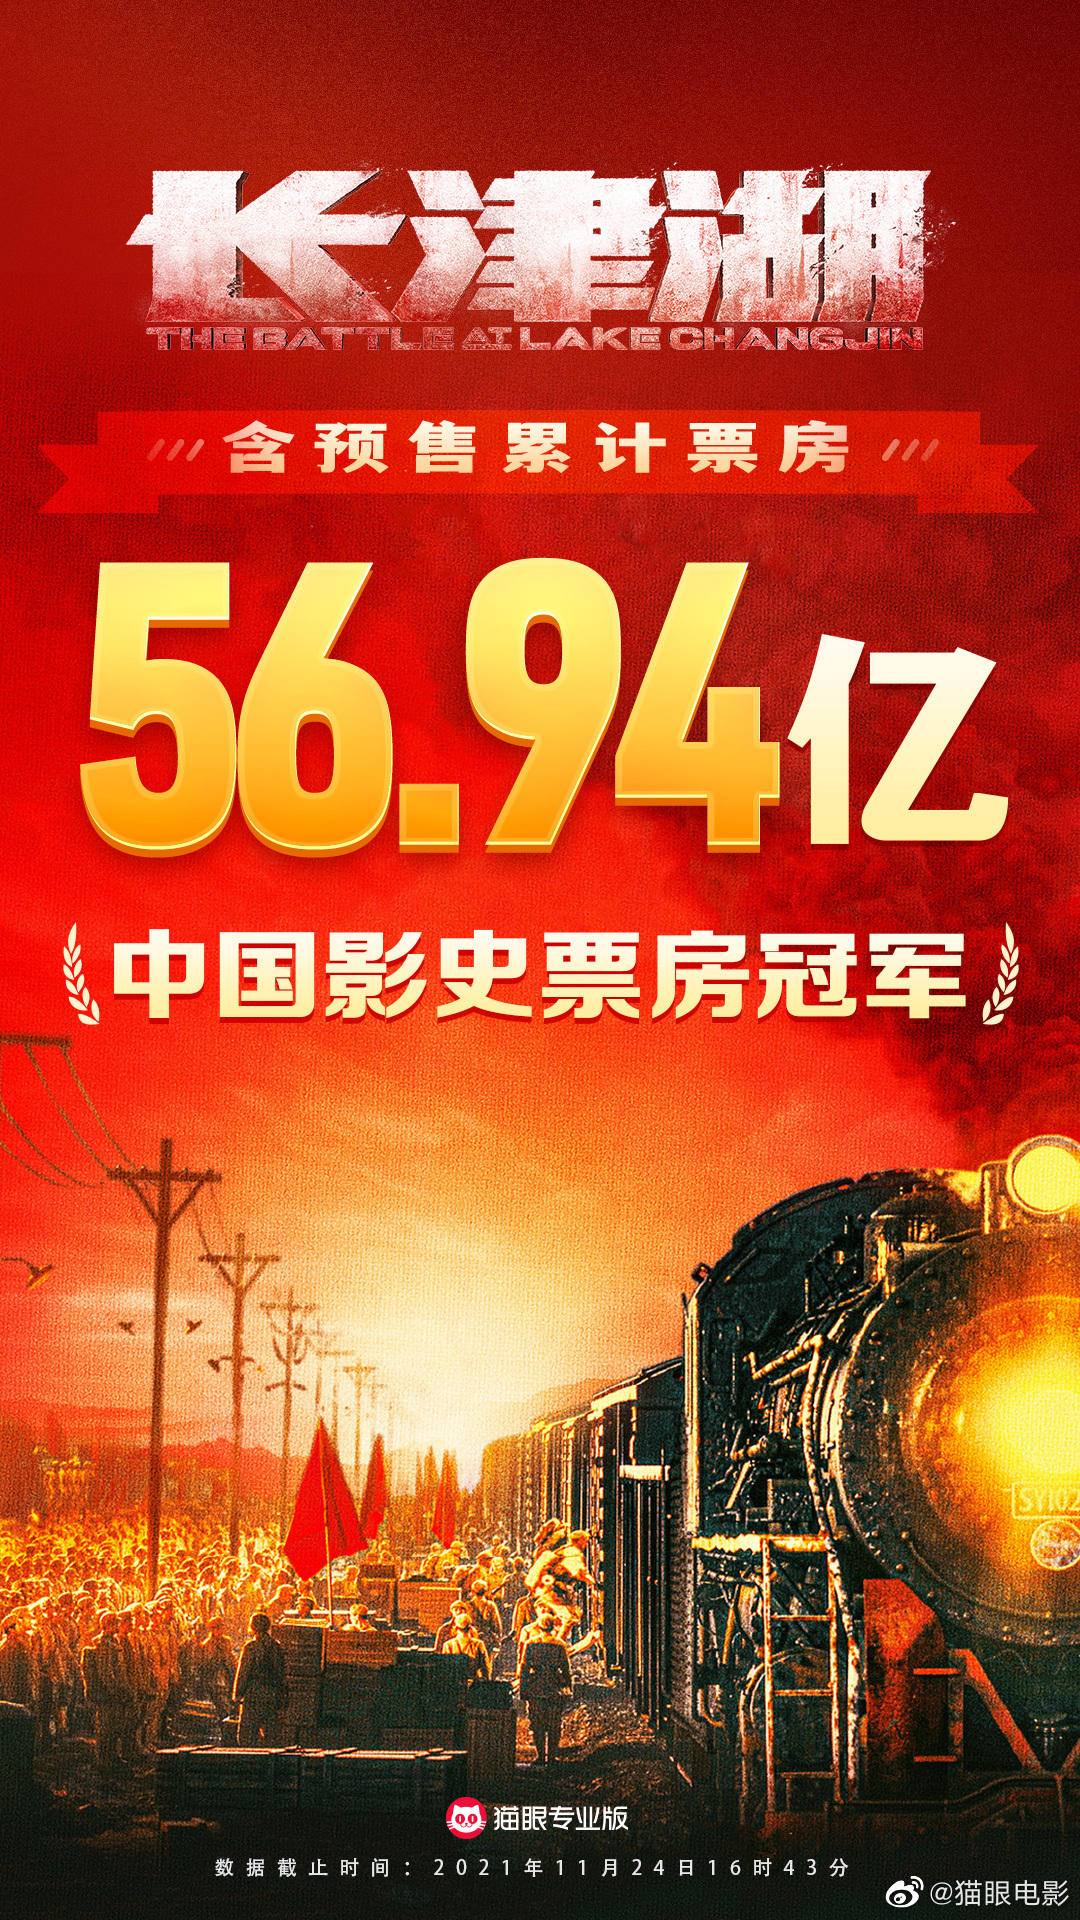 《少津湖》票房56.94亿超《战狼2》 成中国影史票房第1